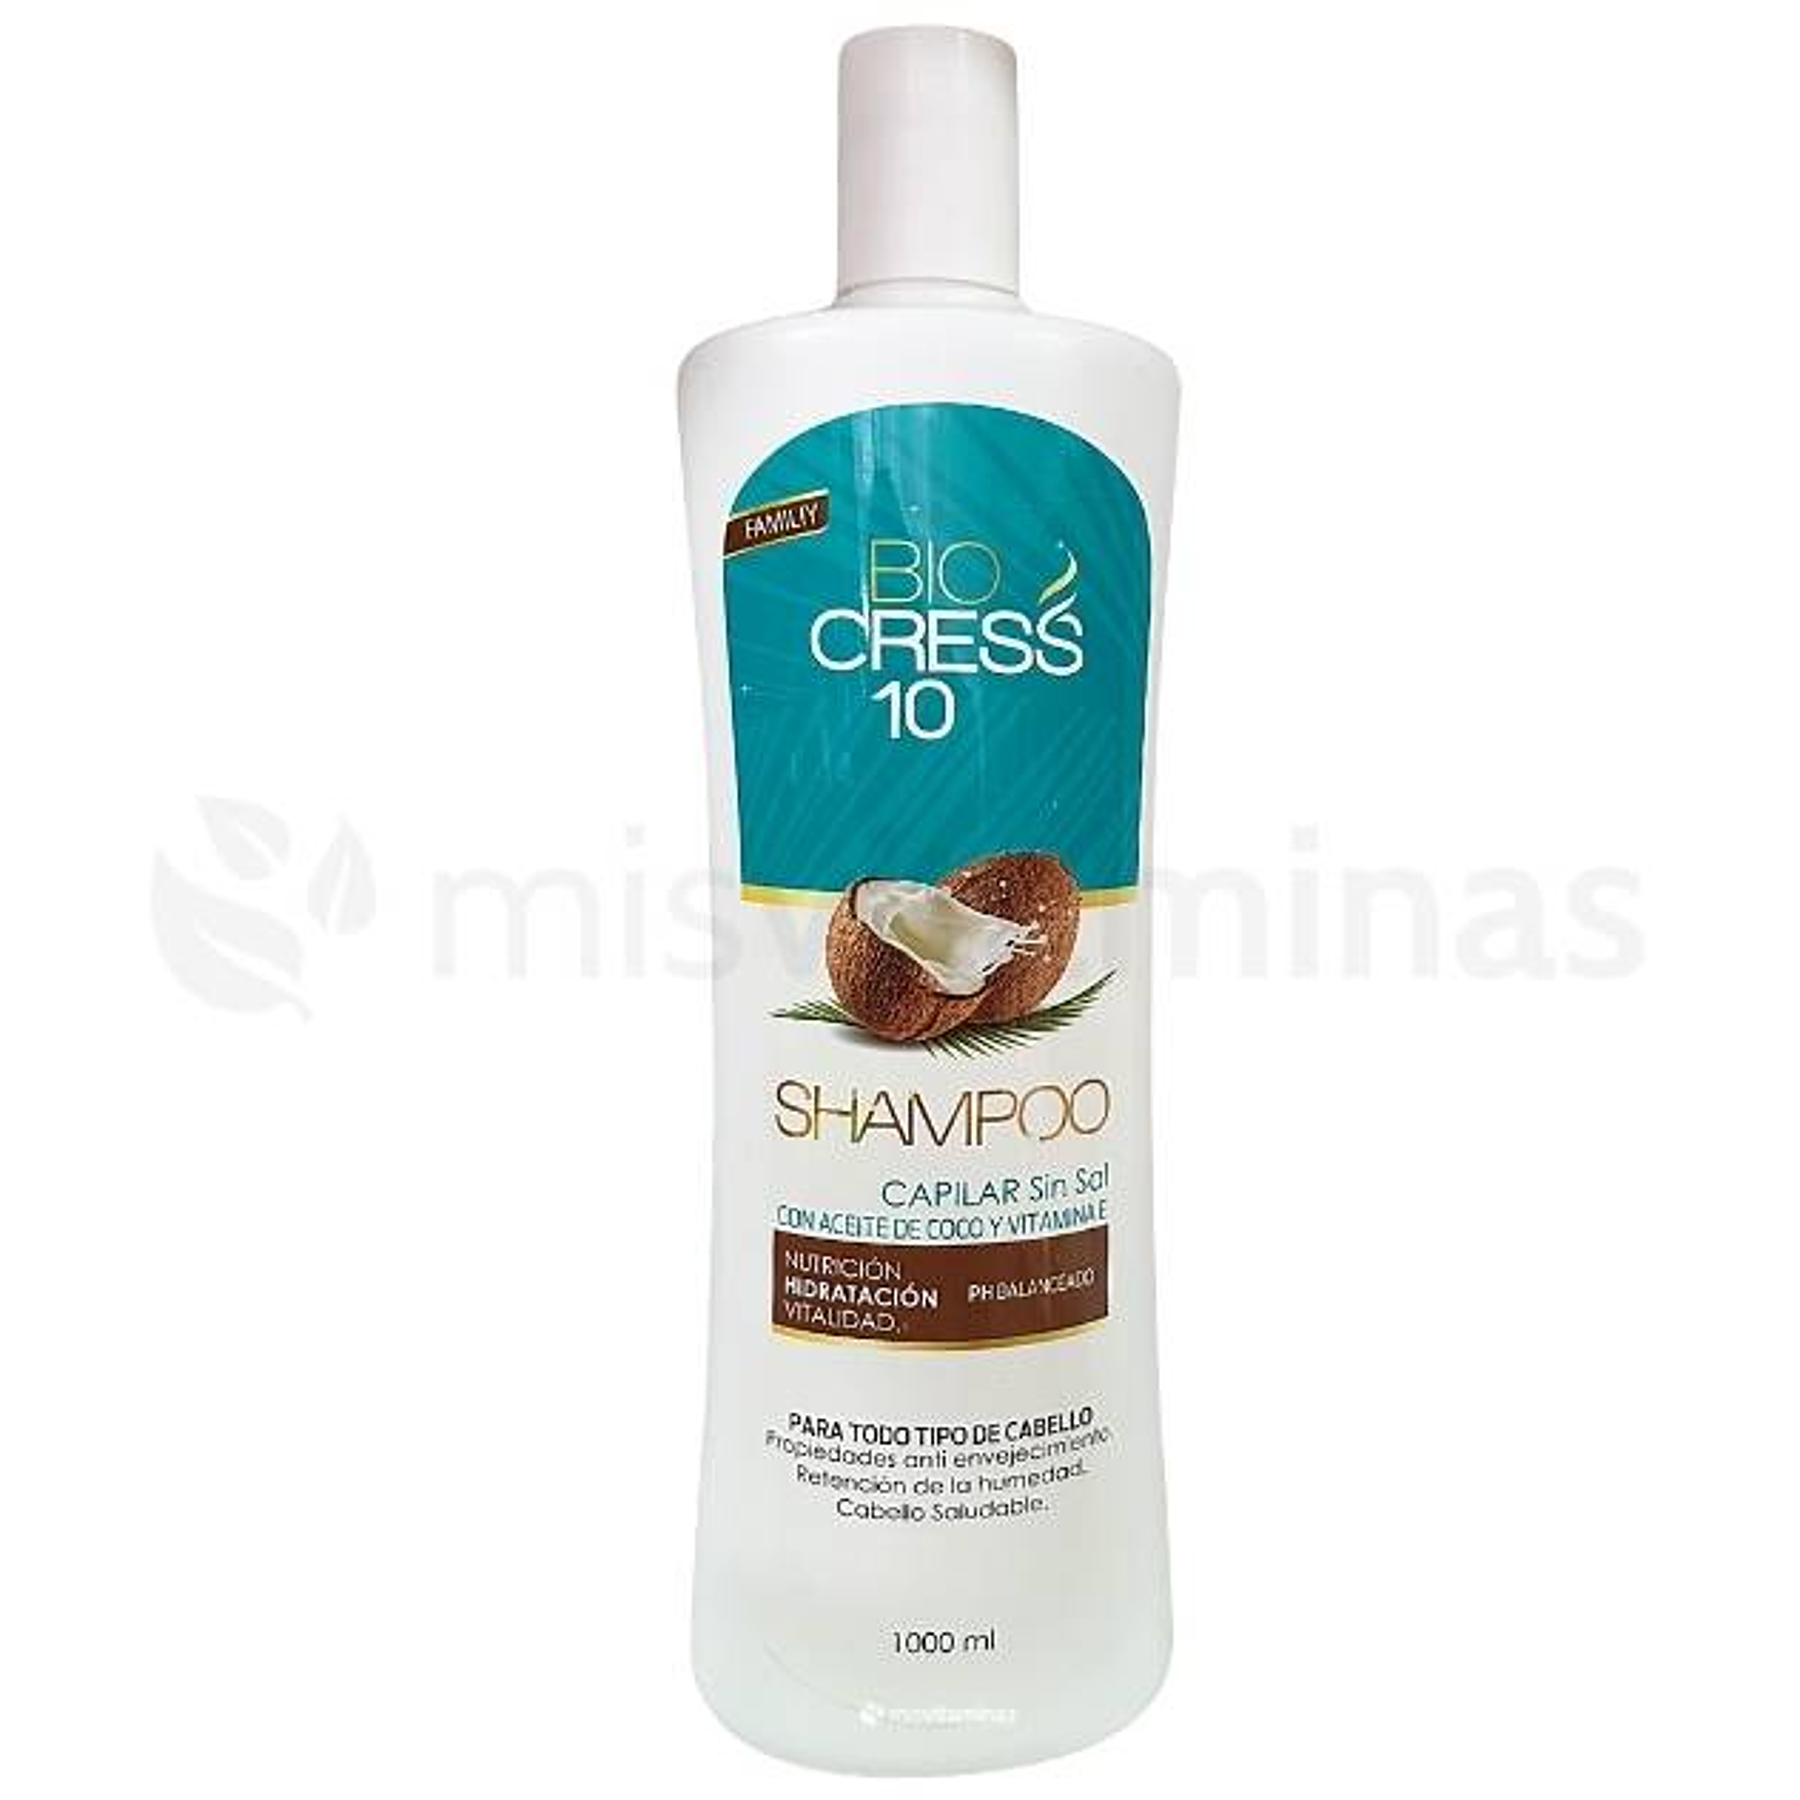 Shampoo Familiar con aceite de coco y vitamina E BioCress 10